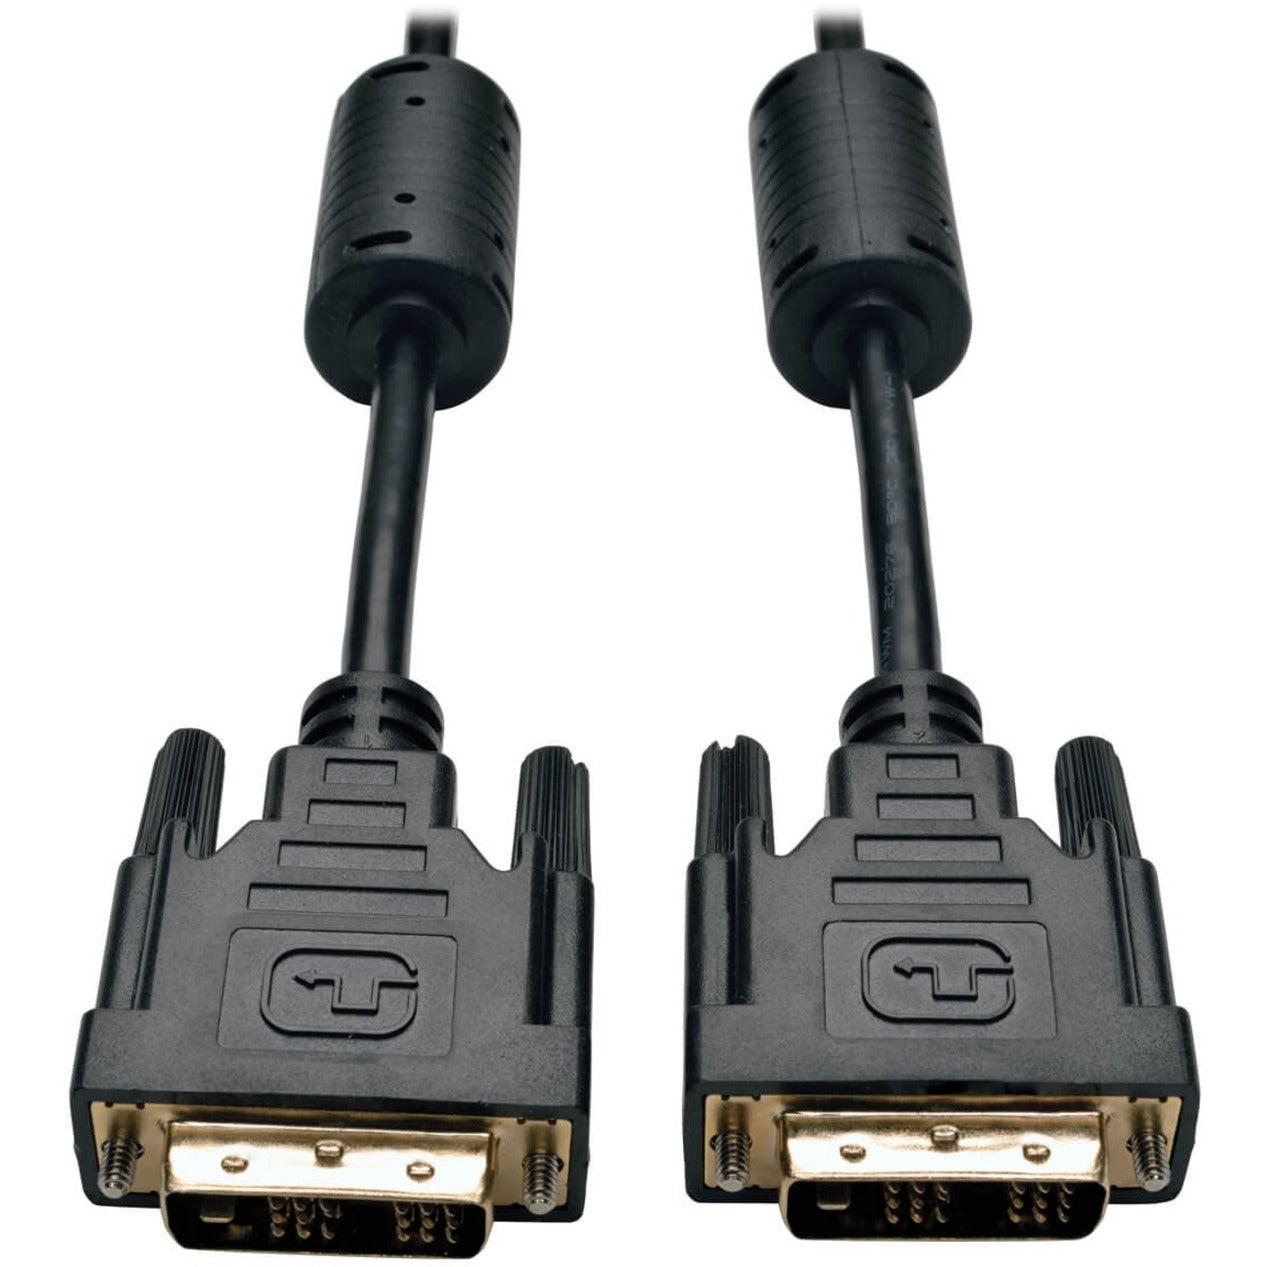 Tripp Lite P561-010 DVI Cable, 10 ft, Black